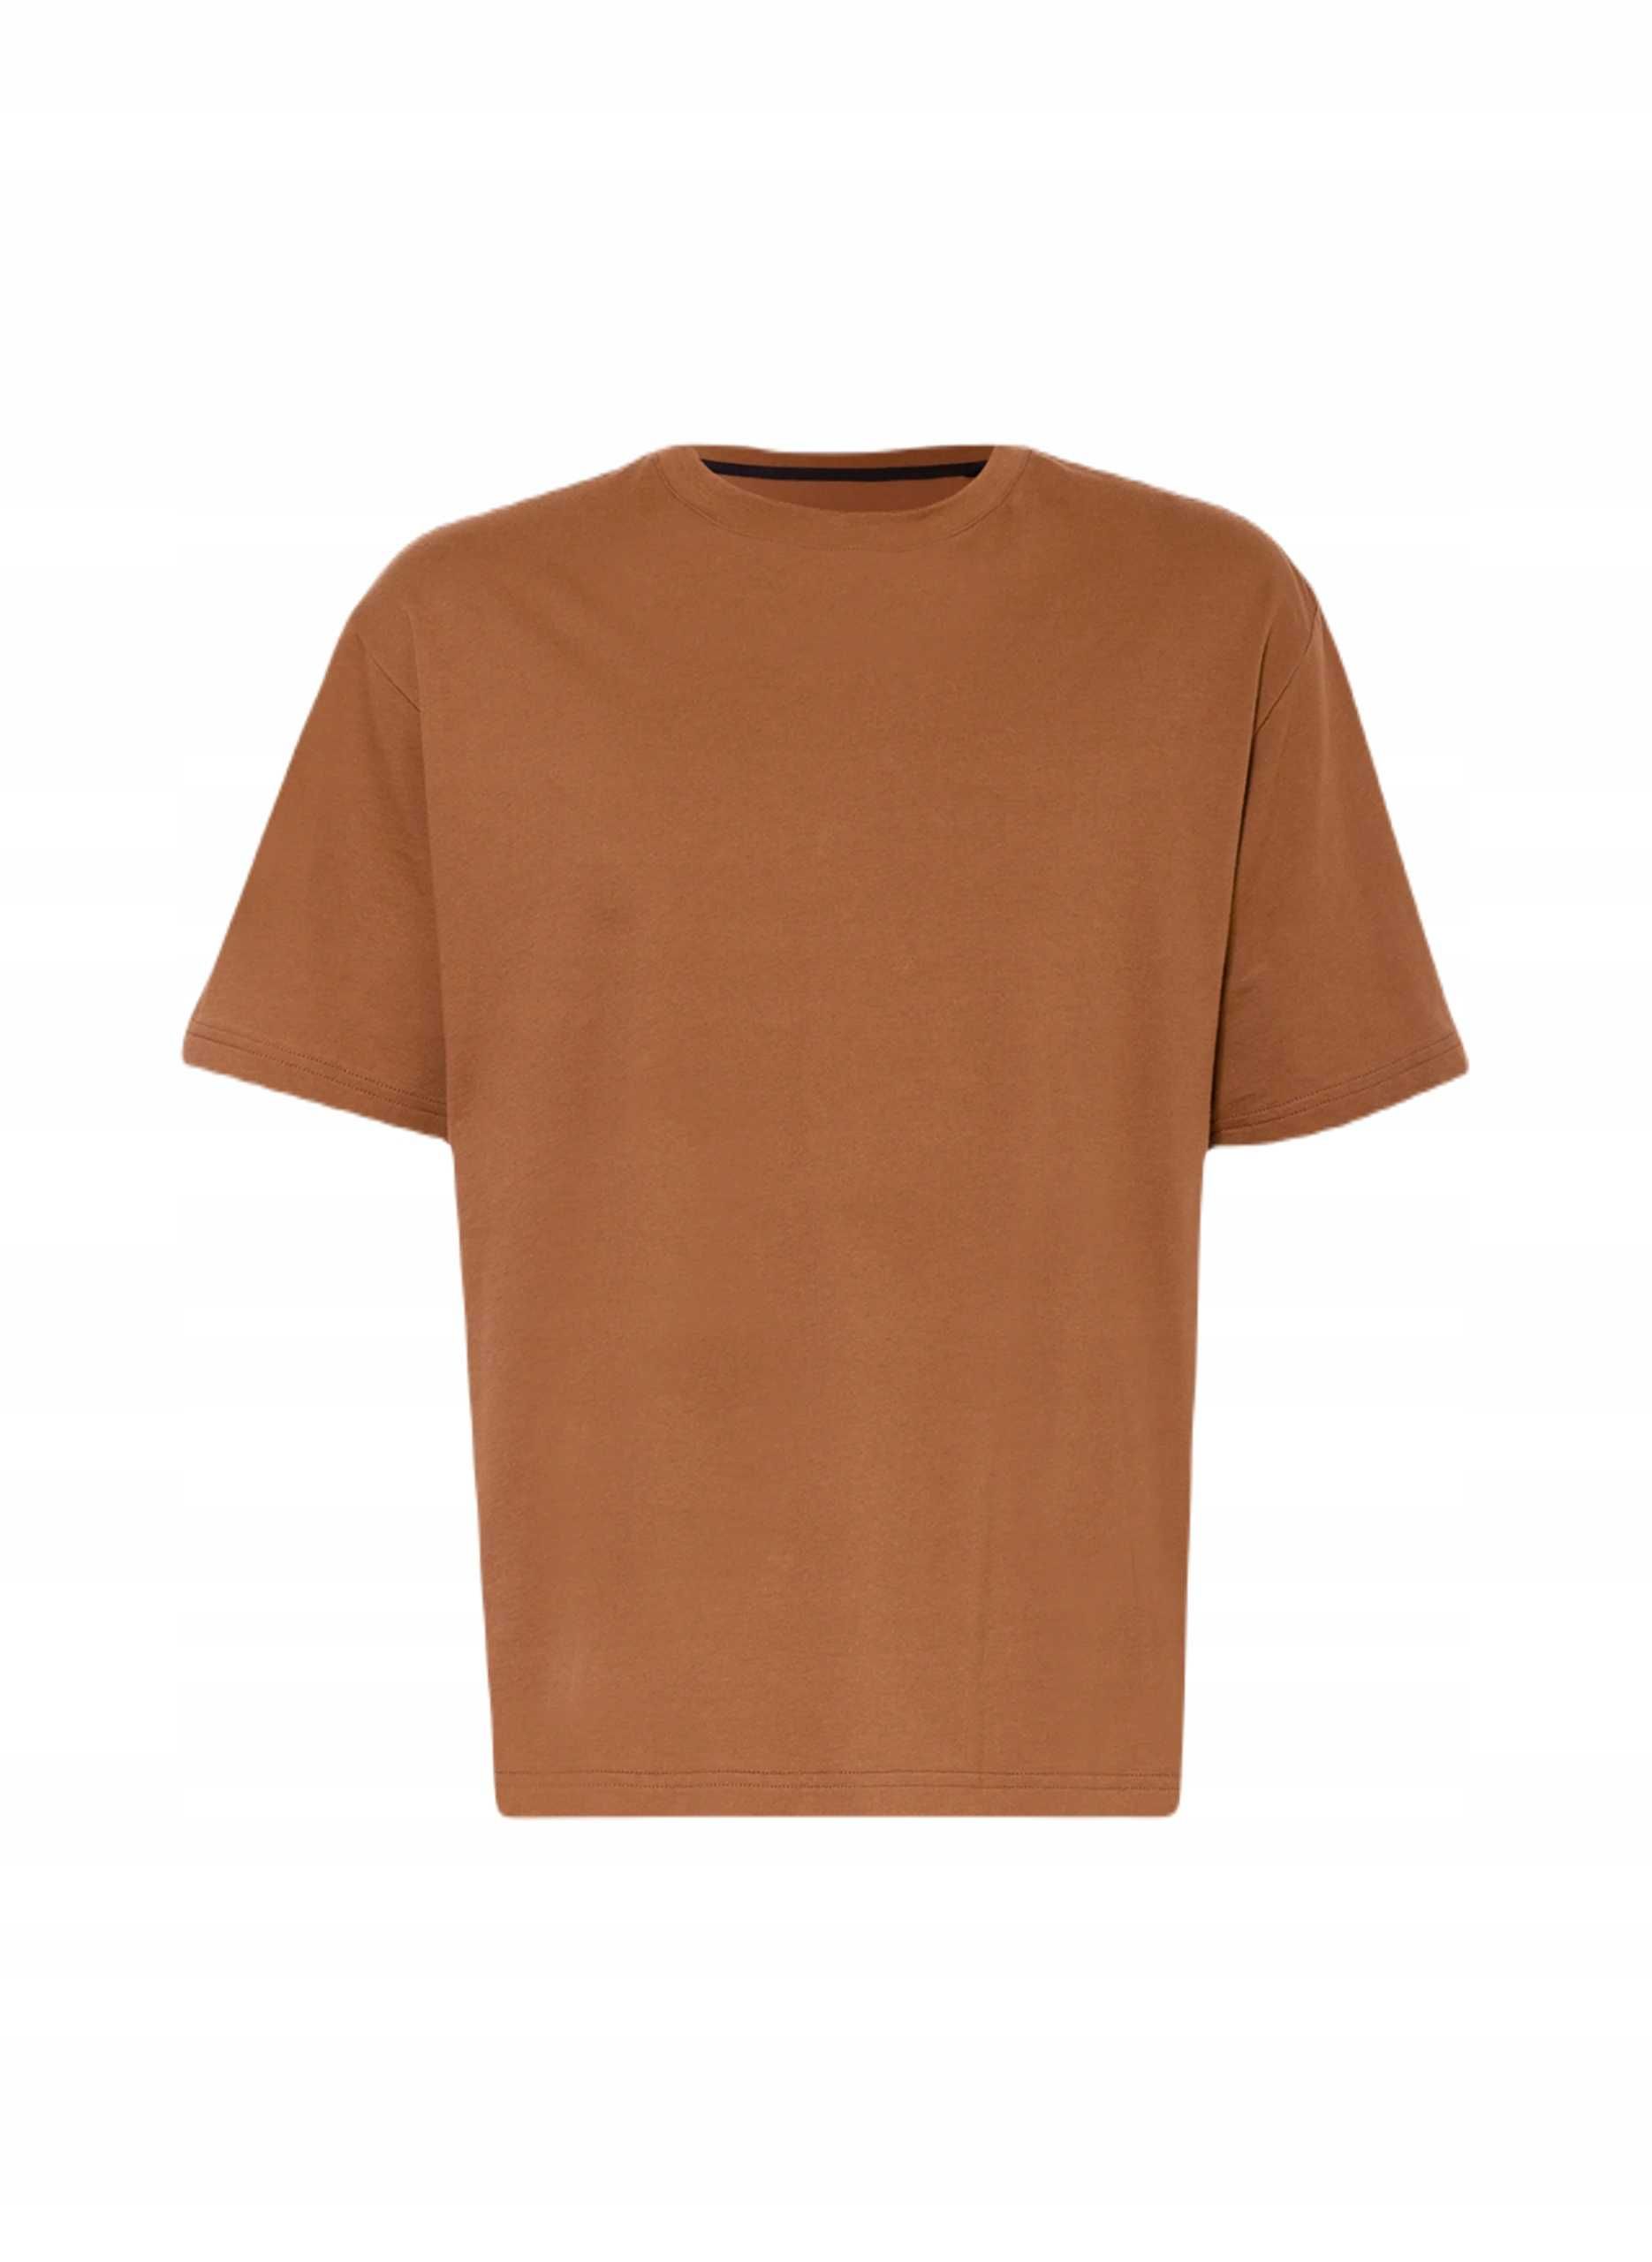 Brązowa koszulka krótki rękaw basic t-shirt XL